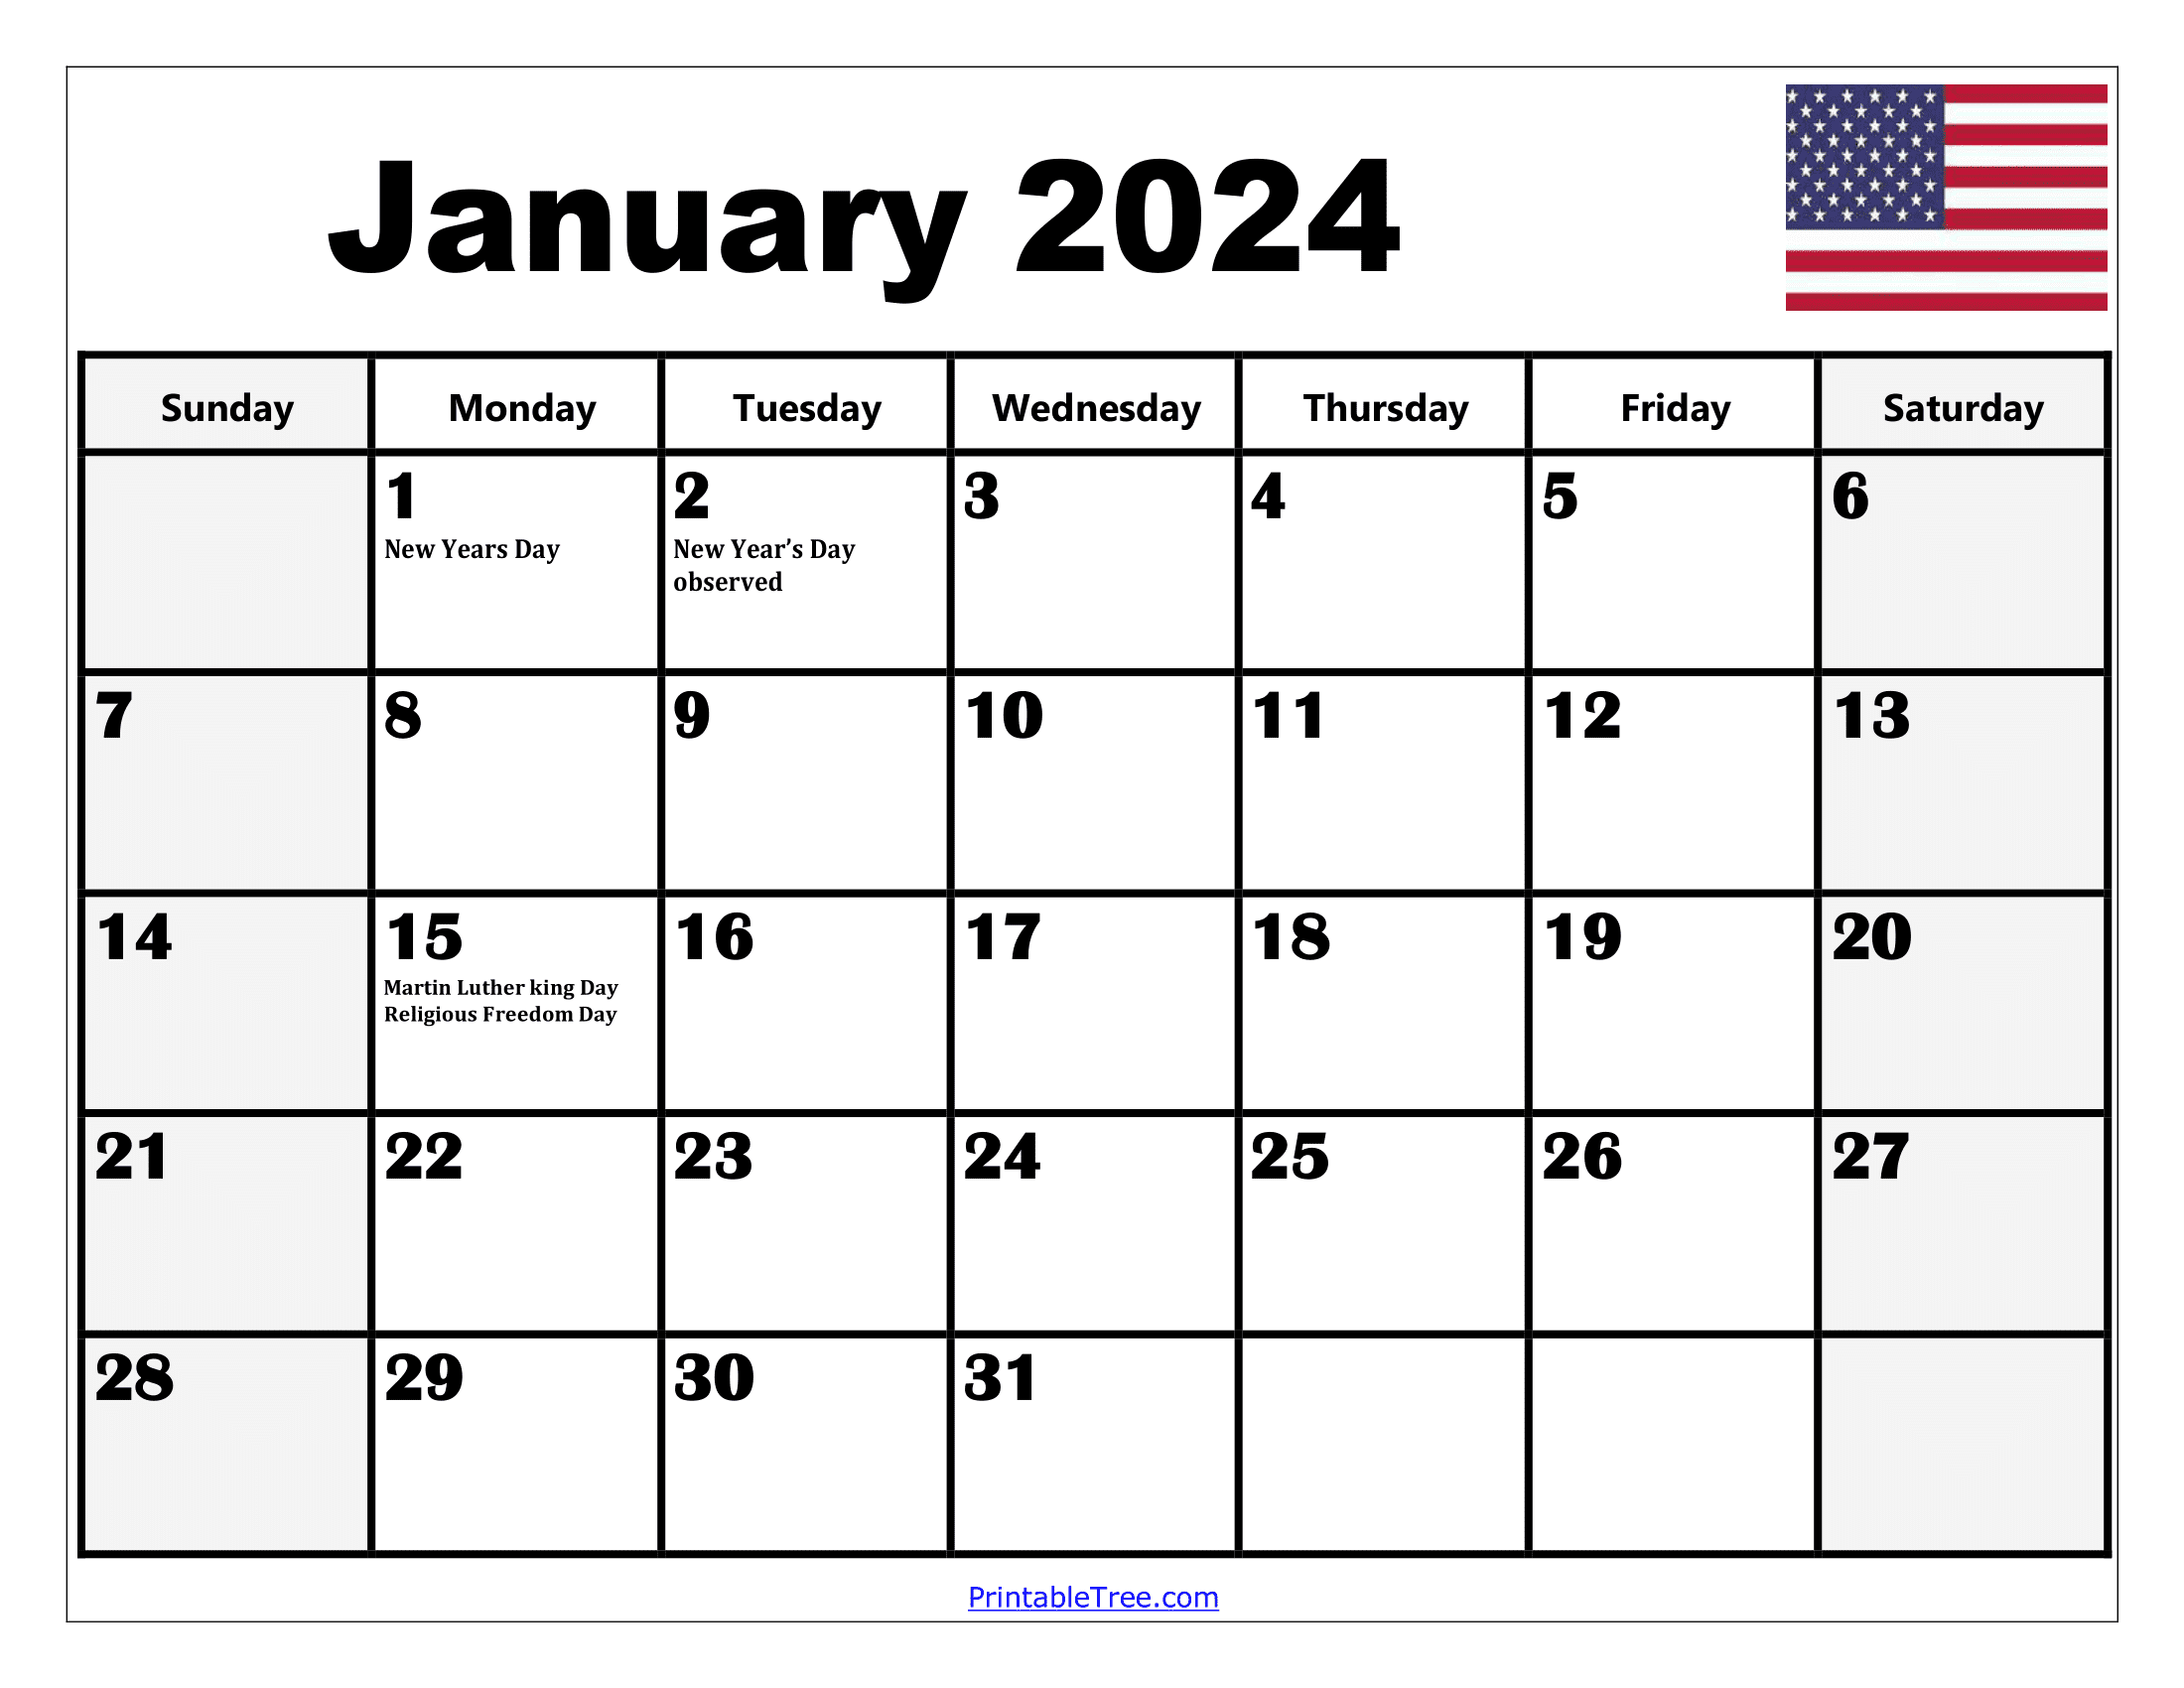 2024 Holiday Calendar Days Free Download Nov 2024 Calendar - Free Printable 2024 Calendar Monthly With Holidays